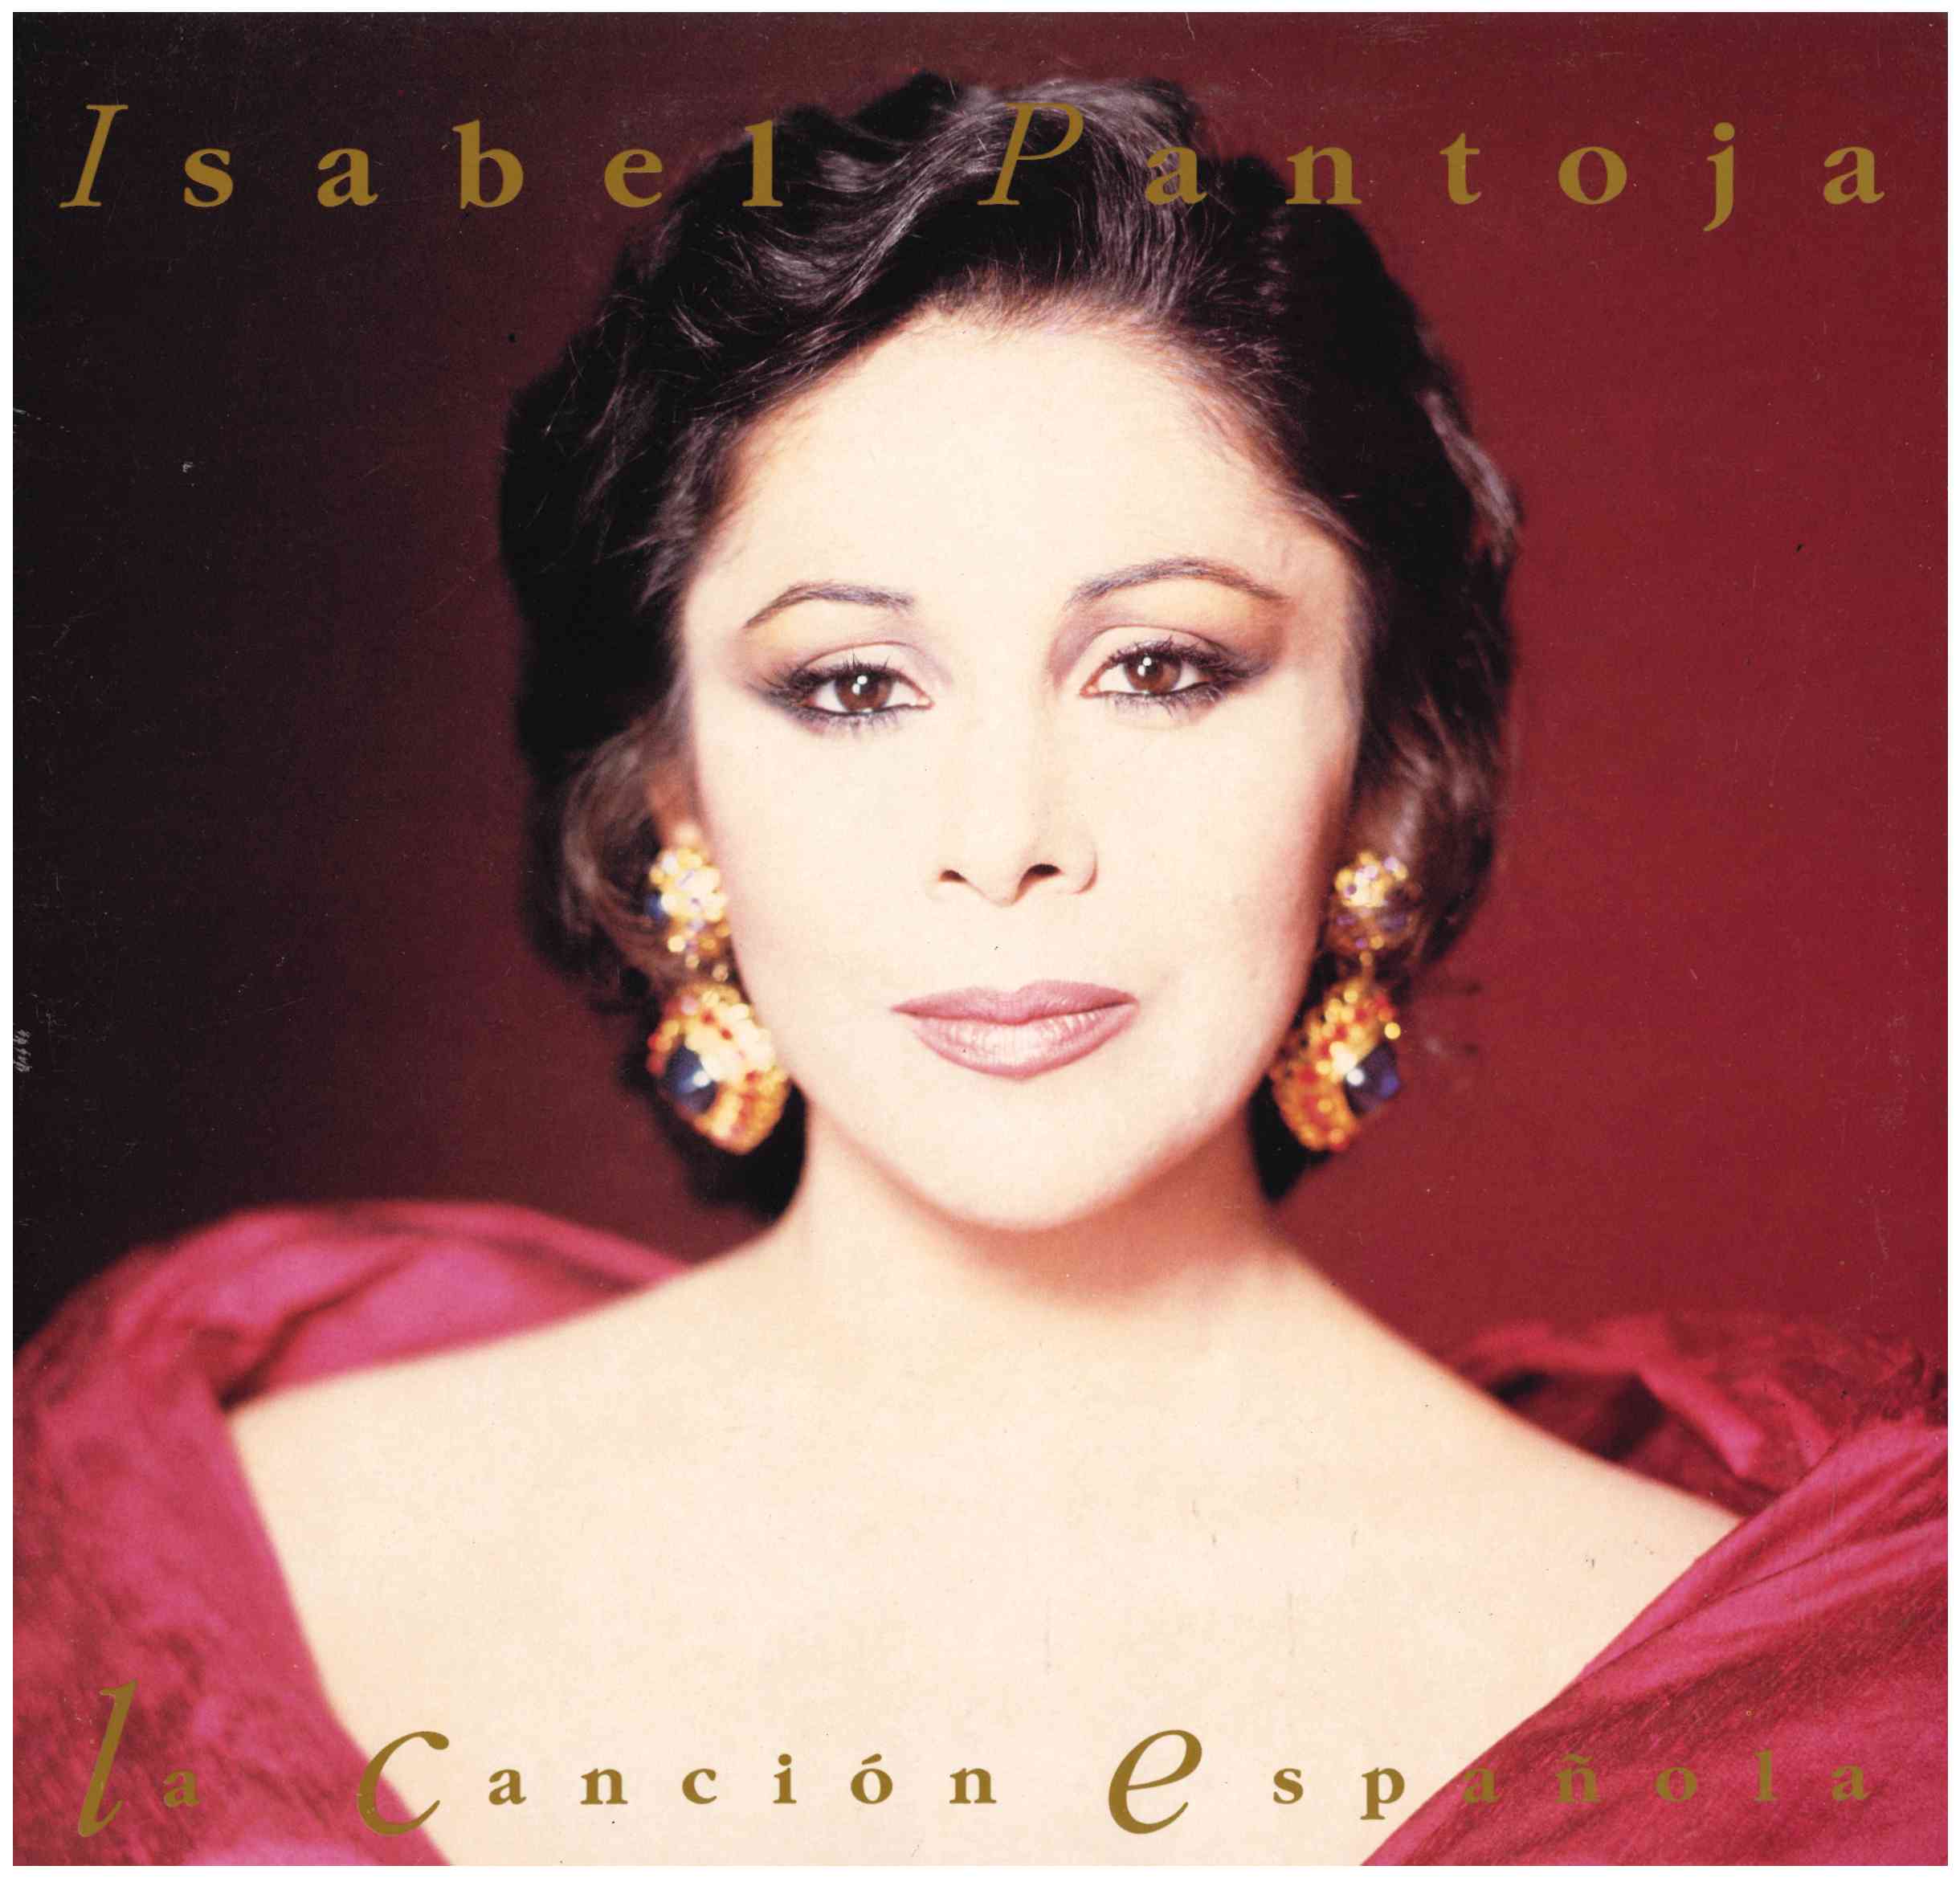 Isabel Pantoja. La canción española. Doble LP. RCA 1990 (PL 74804)